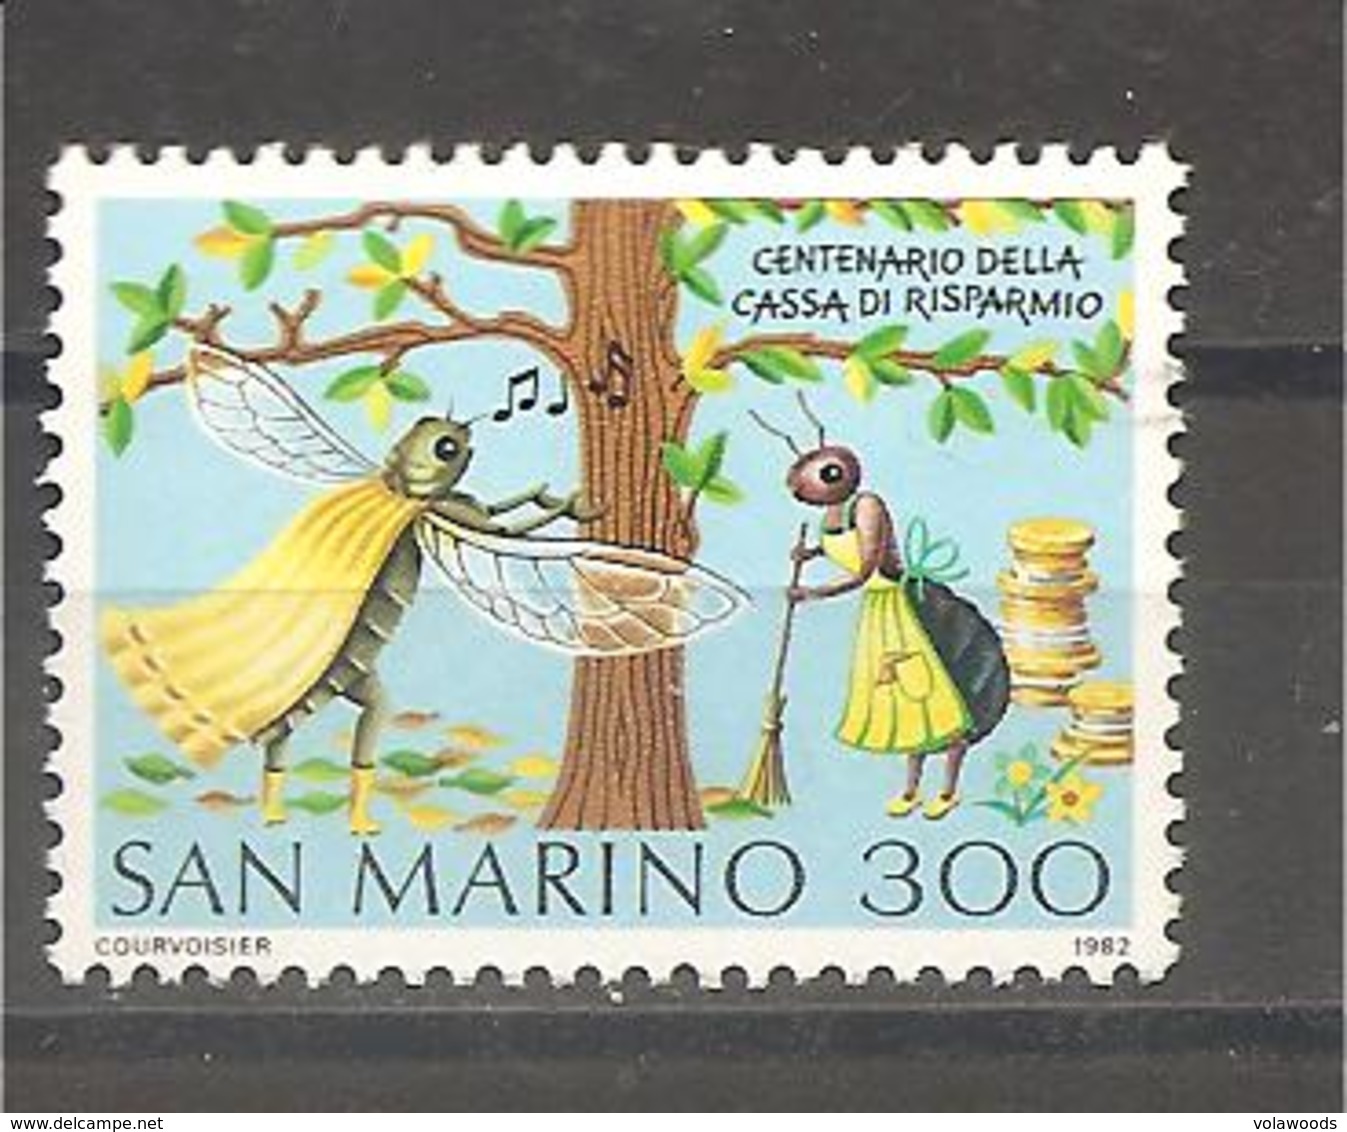 San Marino - Serie Completa Nuova: Centenario Della Cassa Di Risparmio - 1982 * G - Nuovi